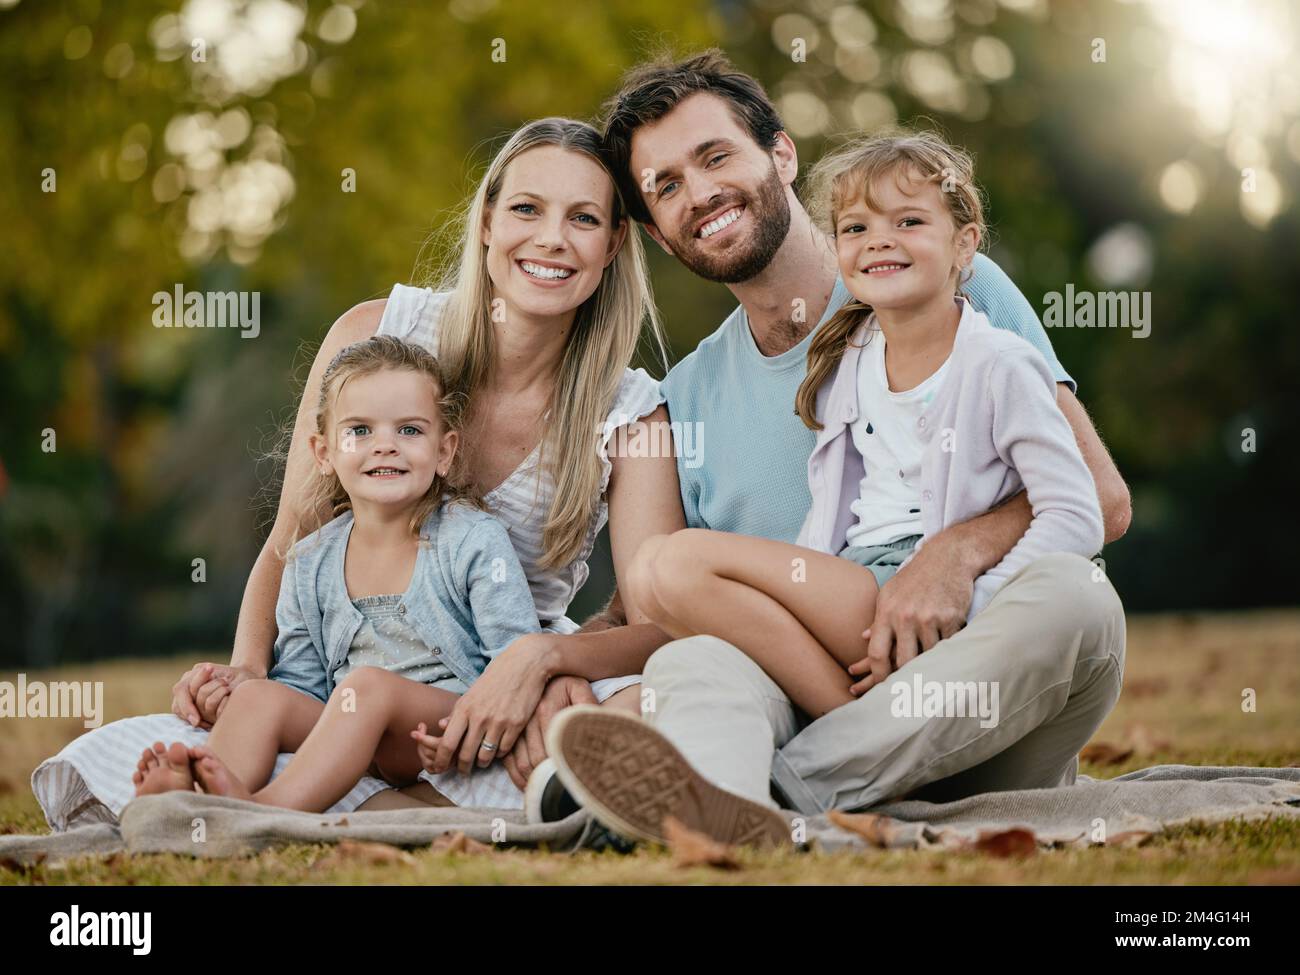 Familie, Park Picknick und Porträt mit Lächeln, Liebe und Glück für die Verbindung auf Decke, Gras und Sonnenschein. Junge, glückliche Familie, Rasen und Eltern mit Stockfoto